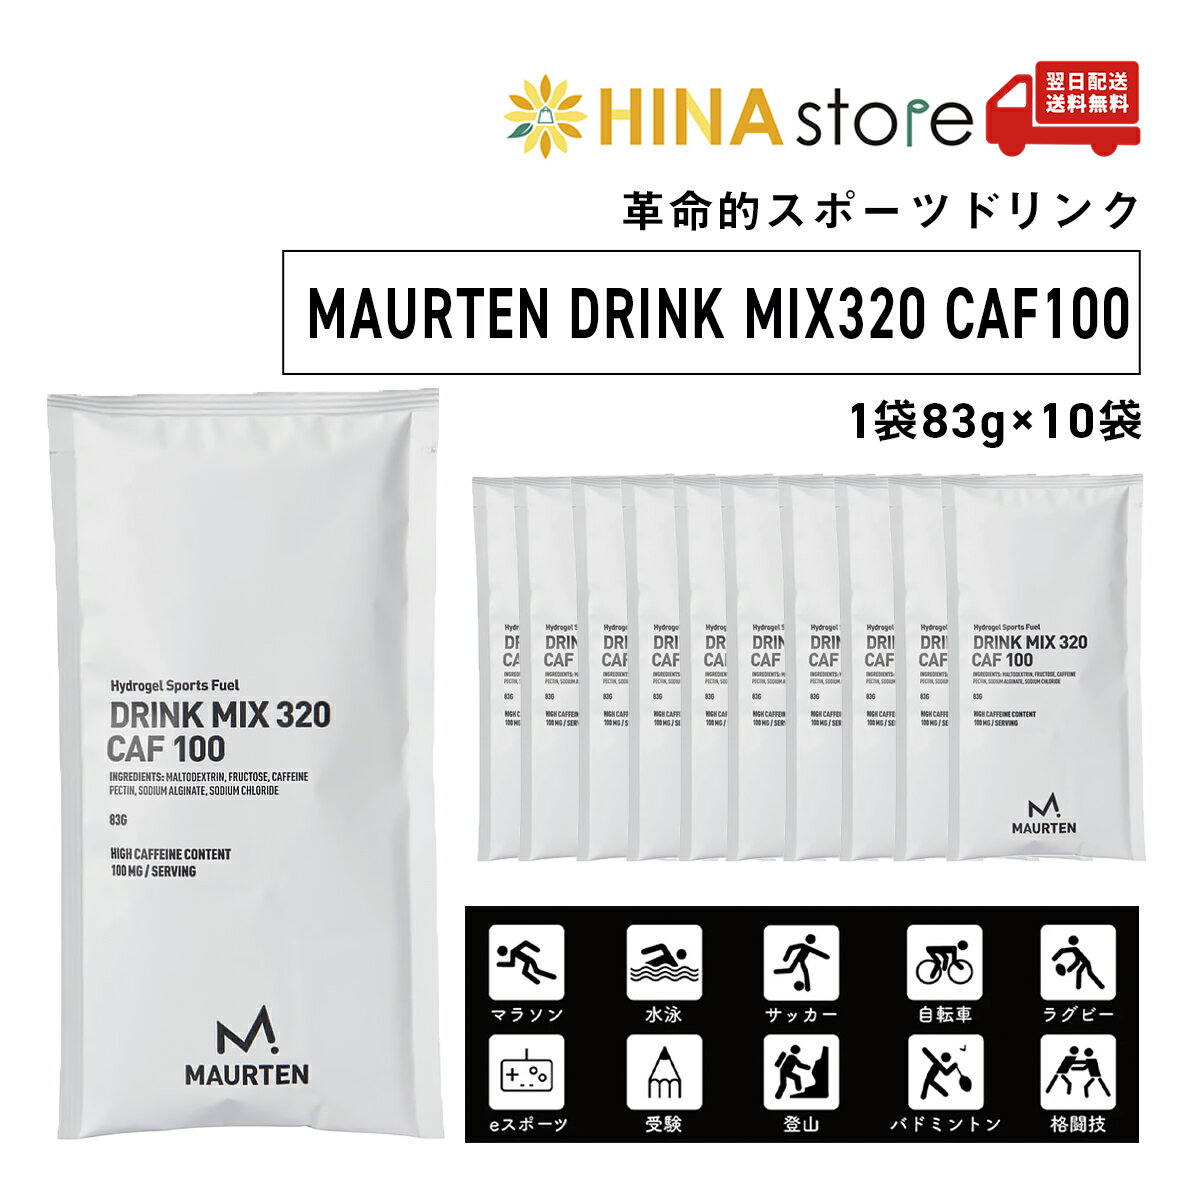 yK̔Xze MAURTEN DRINK MIX320 CAF100 1(183g~10) X|[chN e GiW[hN  JtFC nChQ GlM[⋋ Y }\ ] w` TbJ[ oR Lv`Q